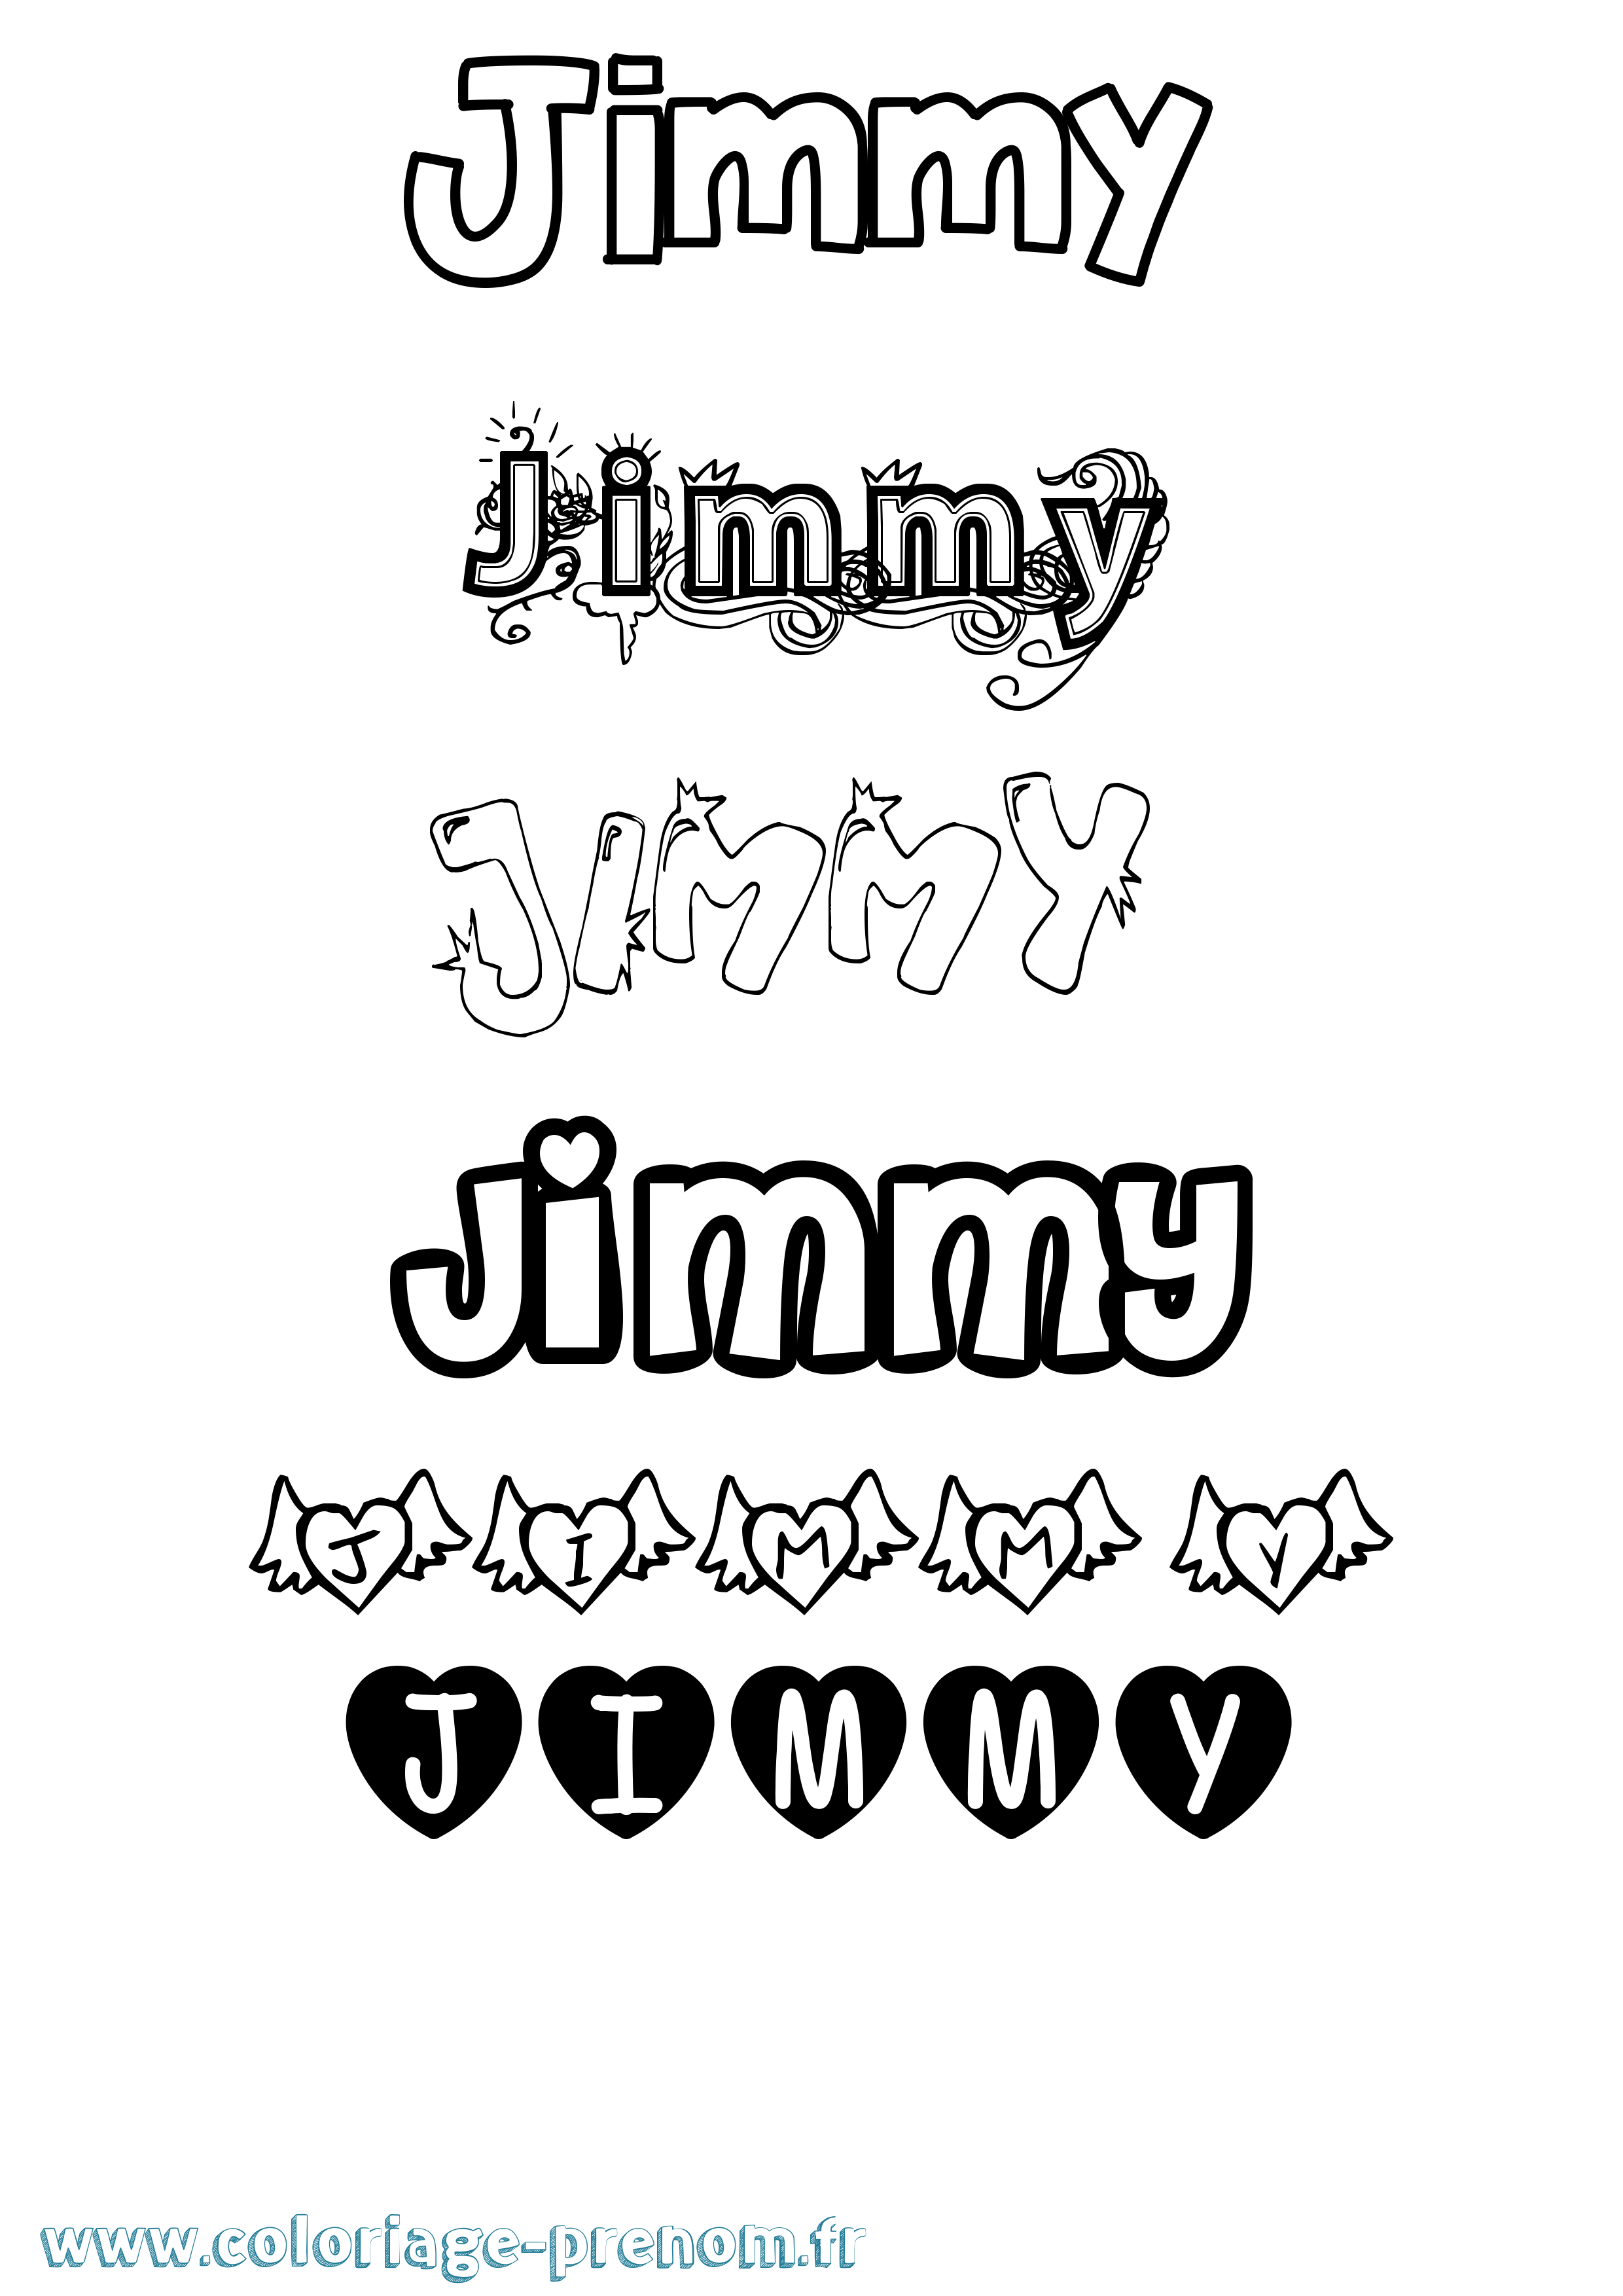 Coloriage prénom Jimmy Girly